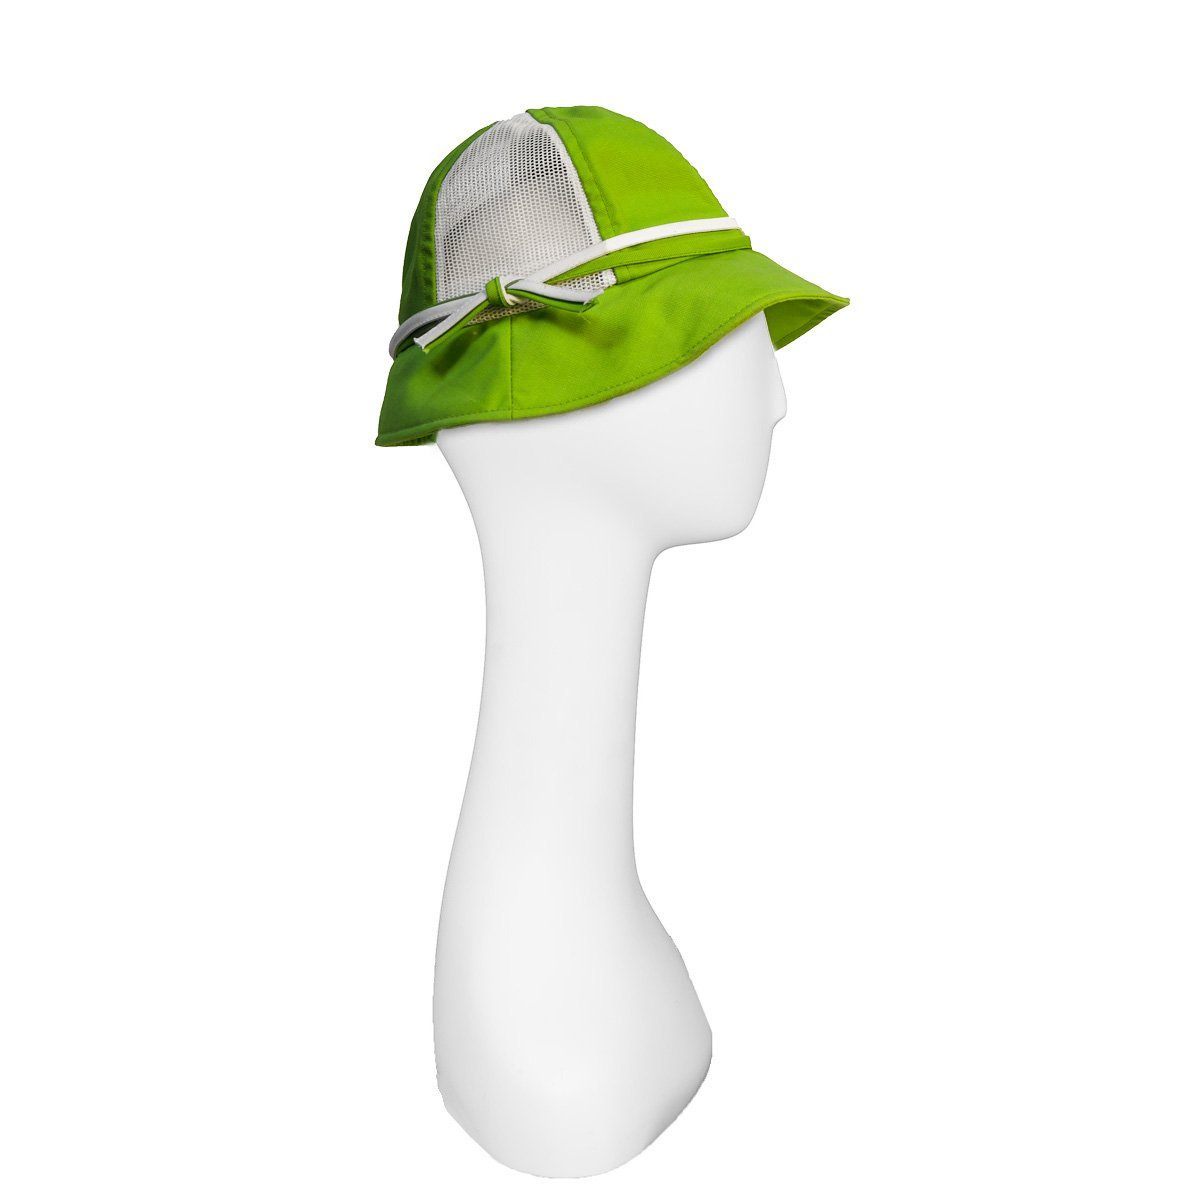 Tennis visor, bright green